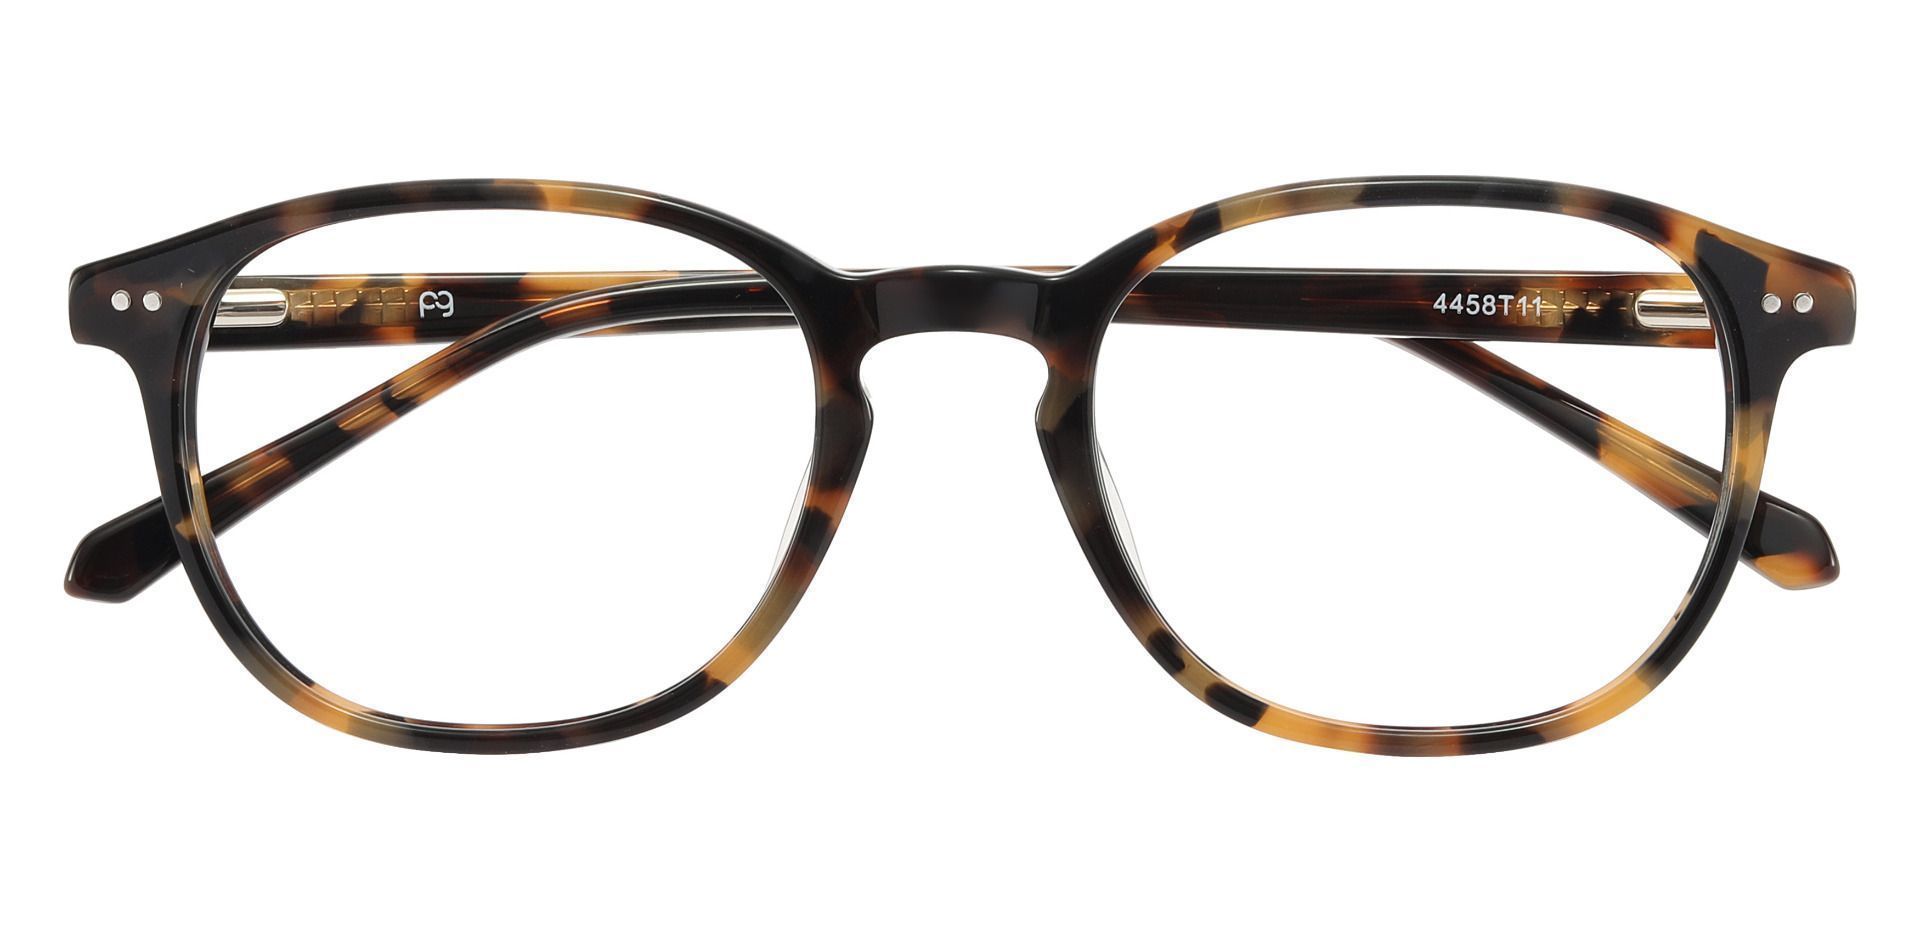 Arabella Oval Eyeglasses Frame - Tortoise